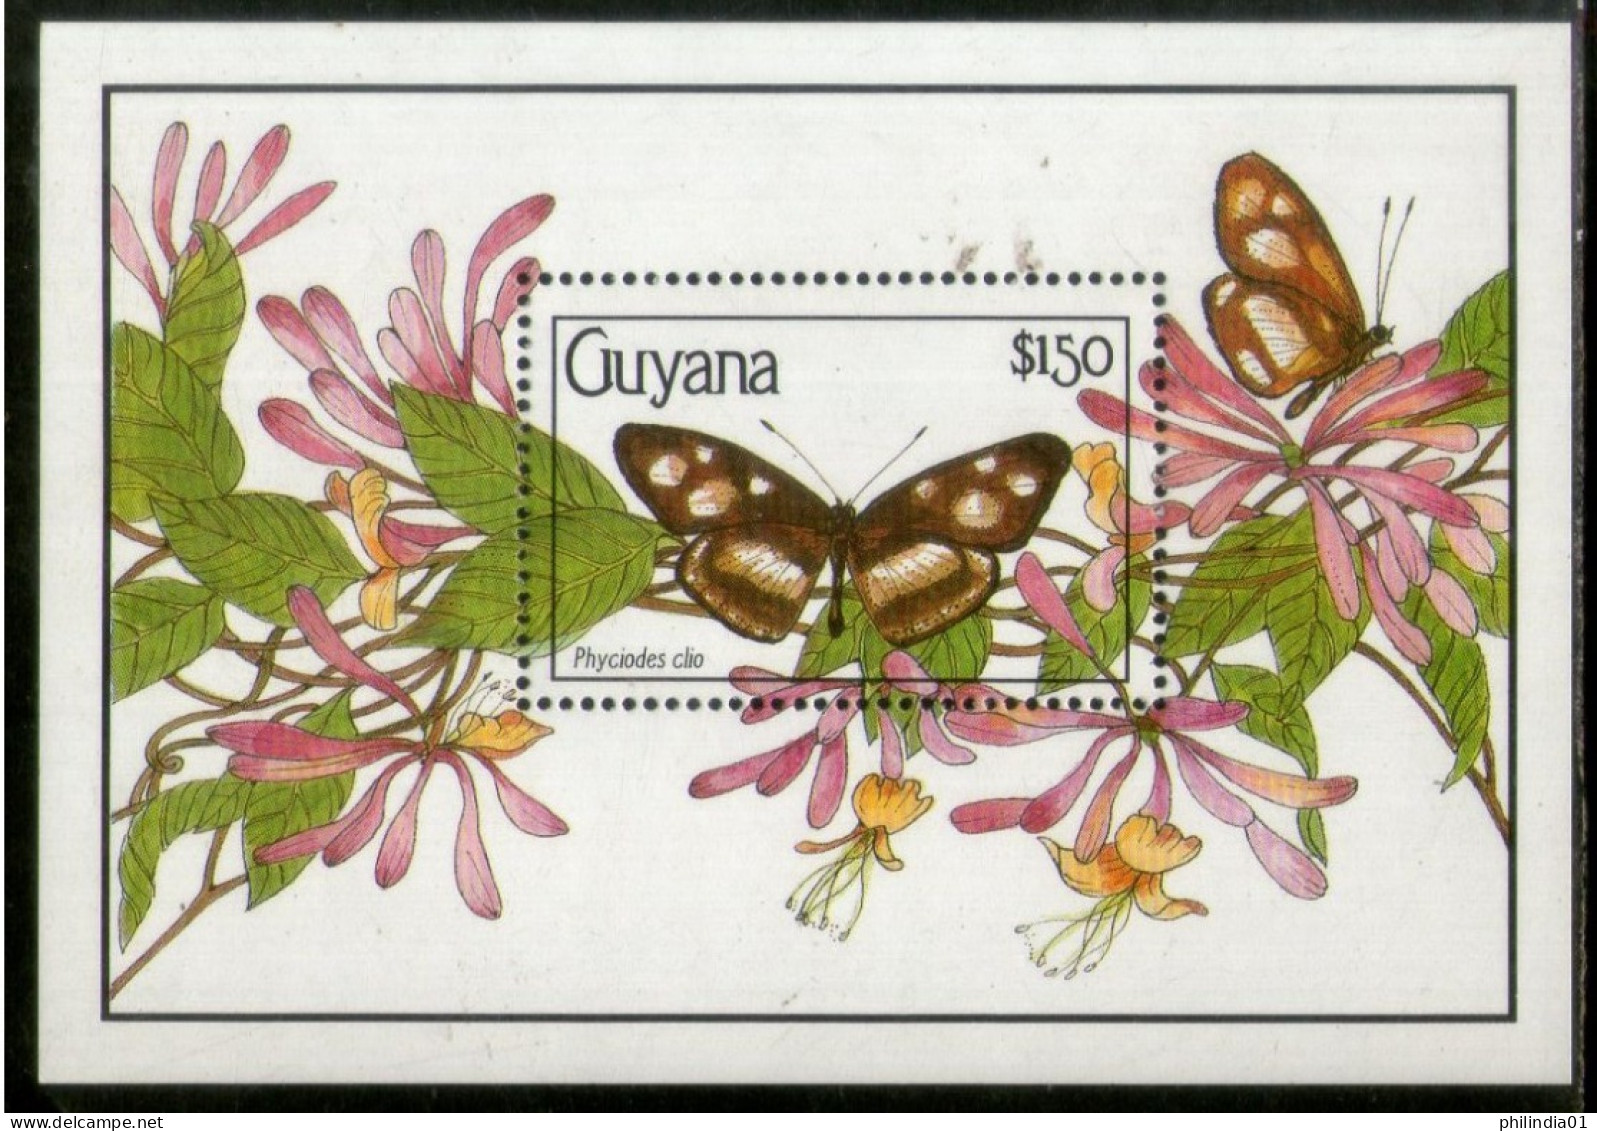 Guyana 1990 Butterflies Moth Insect Sc 2345 M/s MNH # 1860 - Butterflies